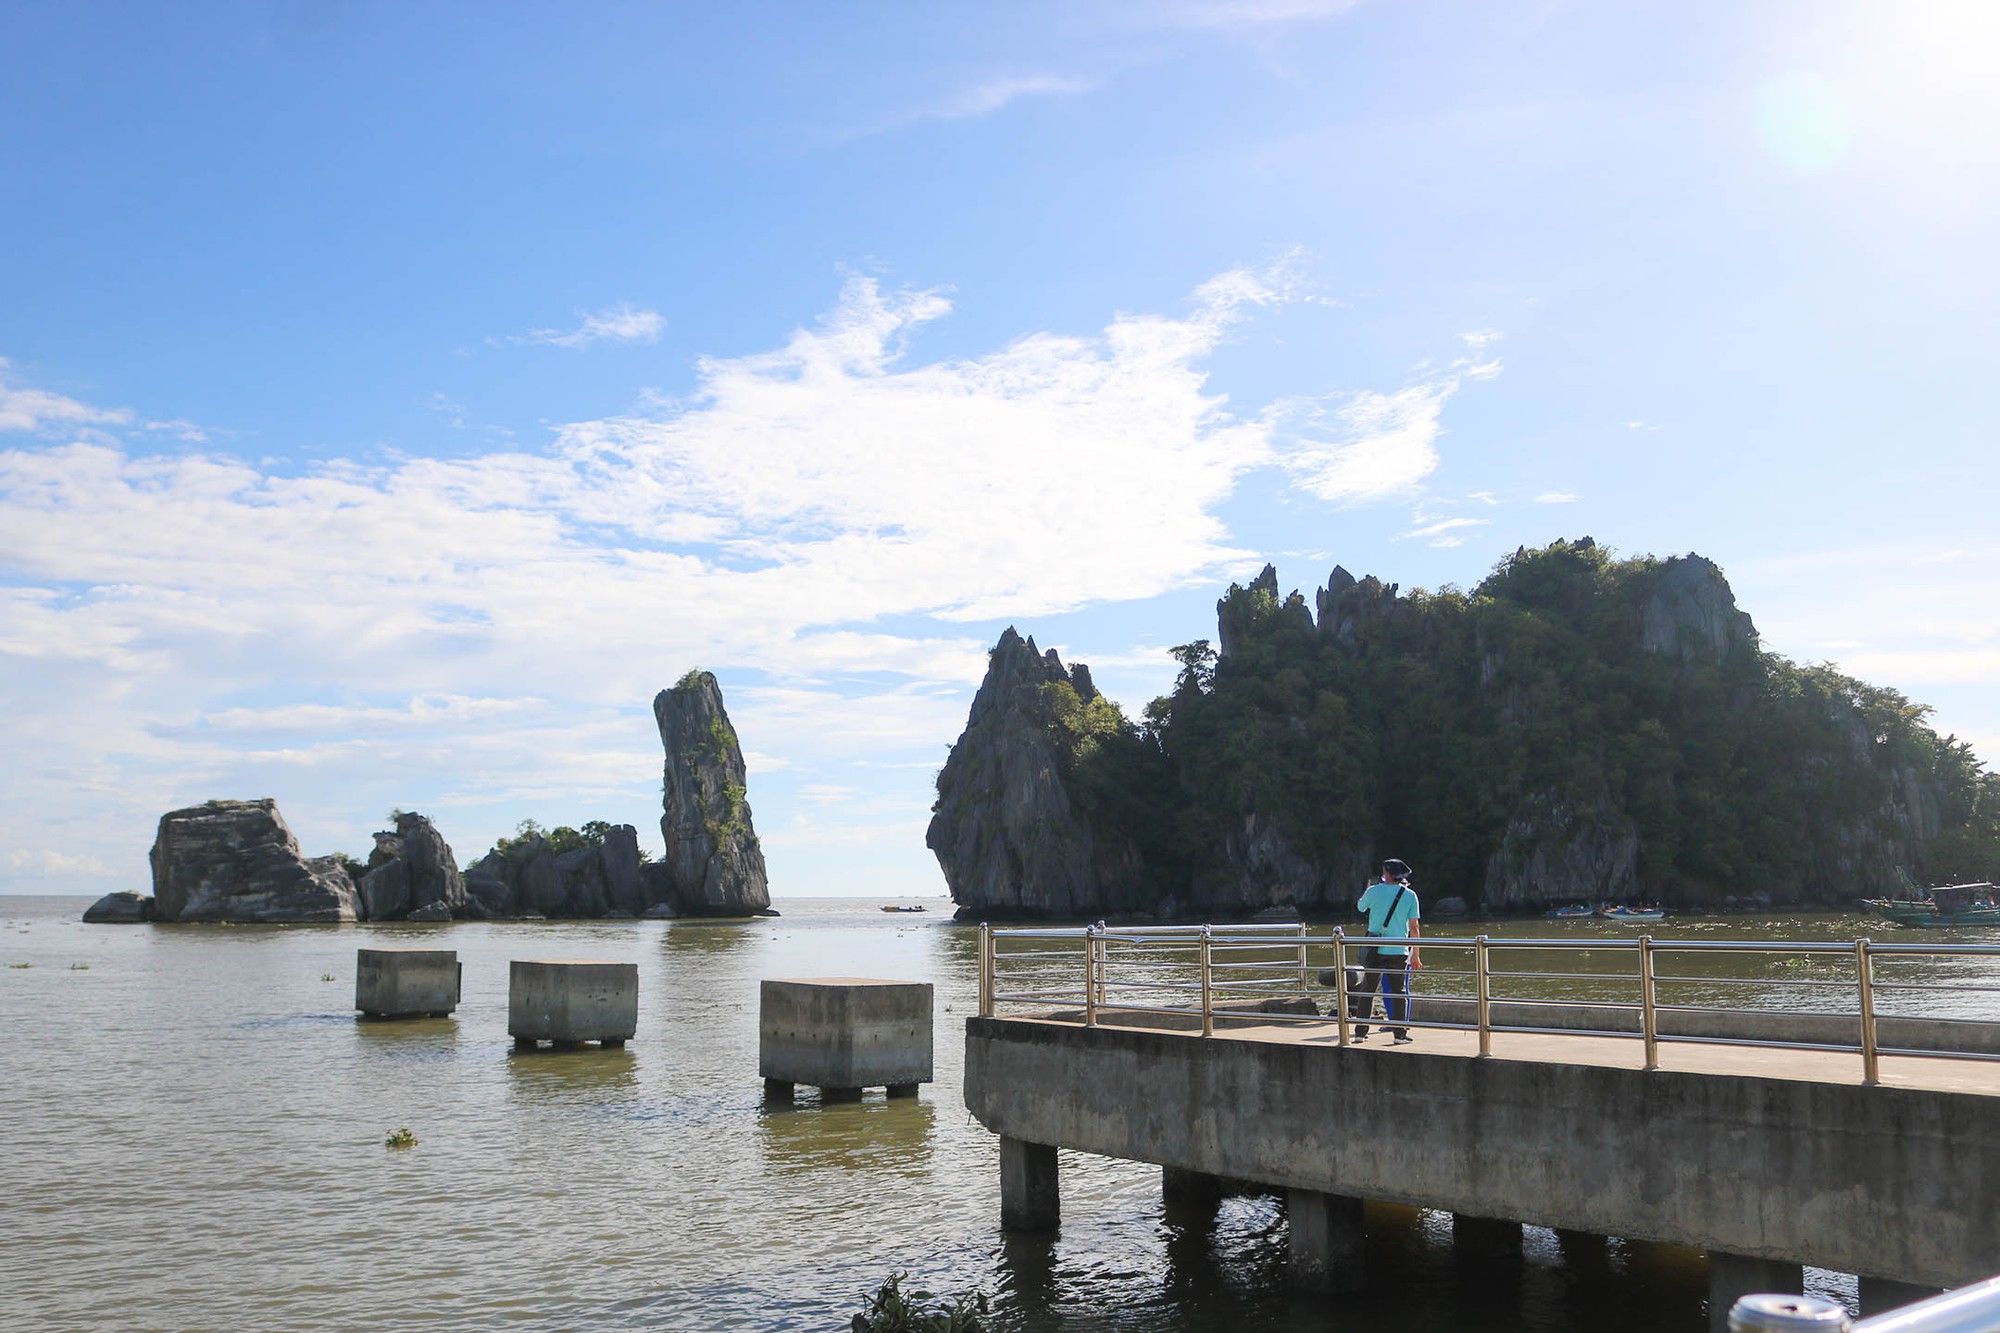 Một vùng biển có tảng đá gọi là Hòn Phụ Tử ở Kiên Giang, muốn đến đó thì phải qua chùa Hang - Ảnh 2.